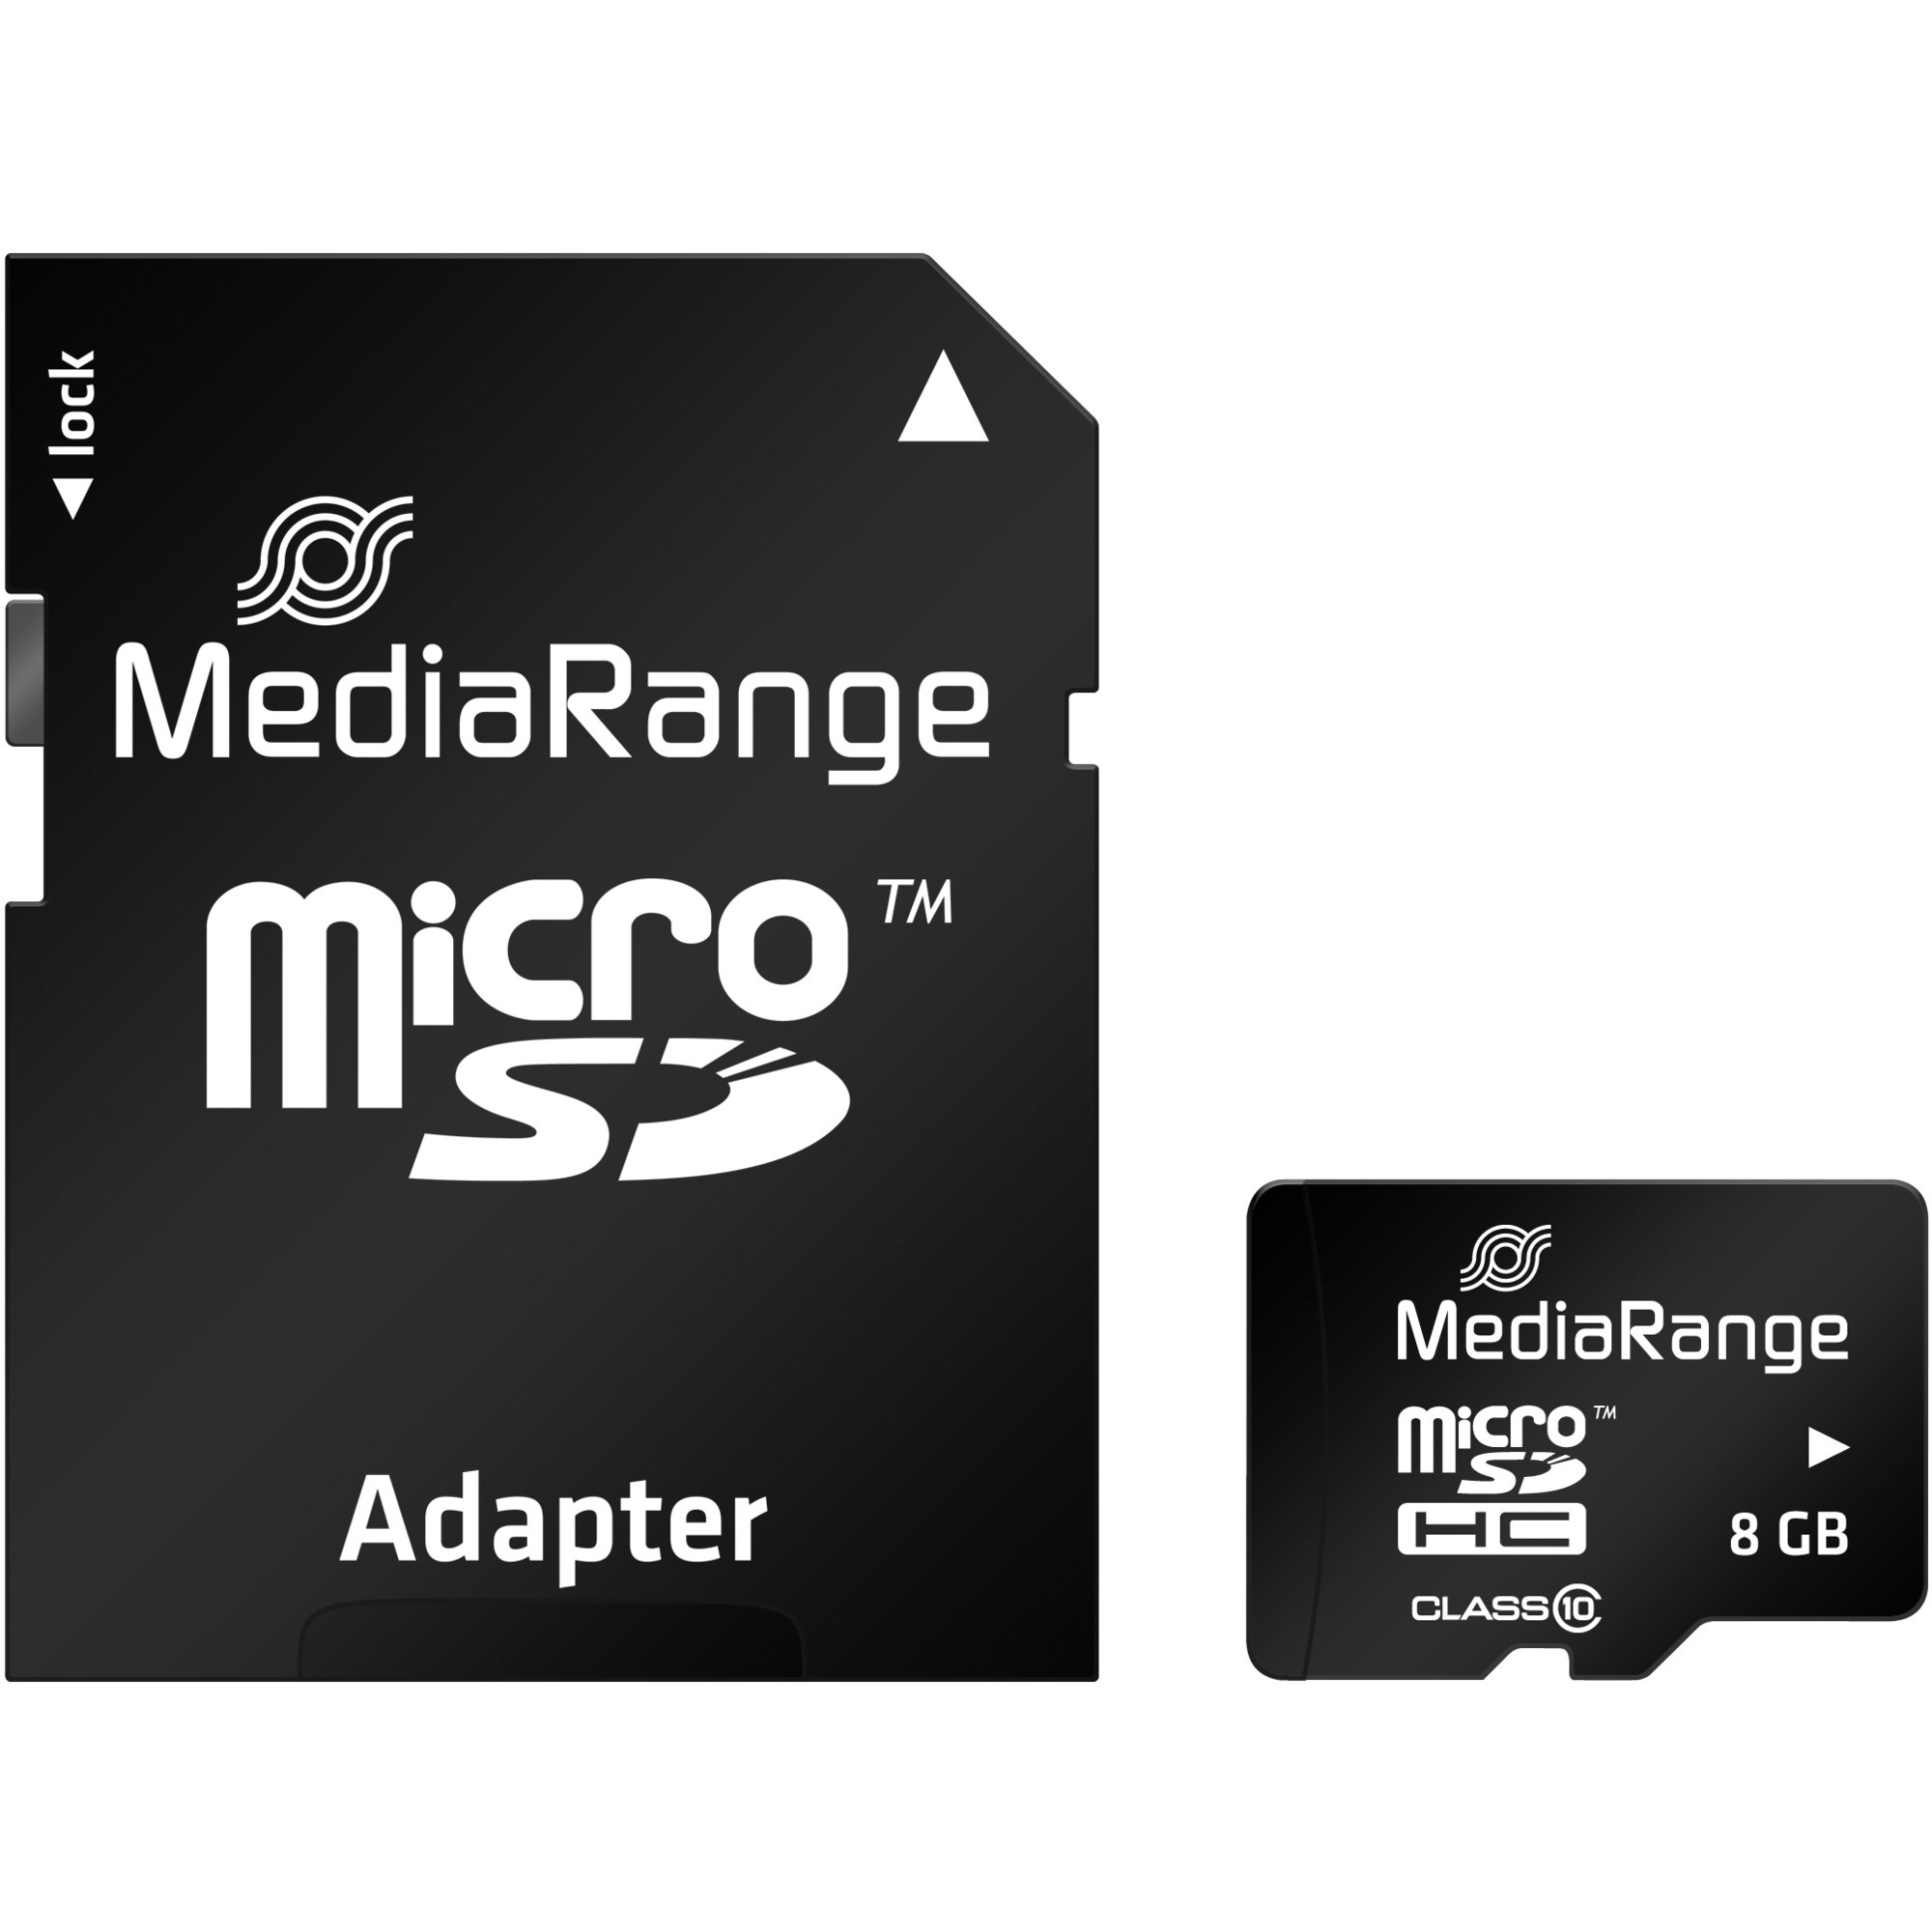 Image of Alternate - 8 GB microSDHC, Speicherkarte online einkaufen bei Alternate